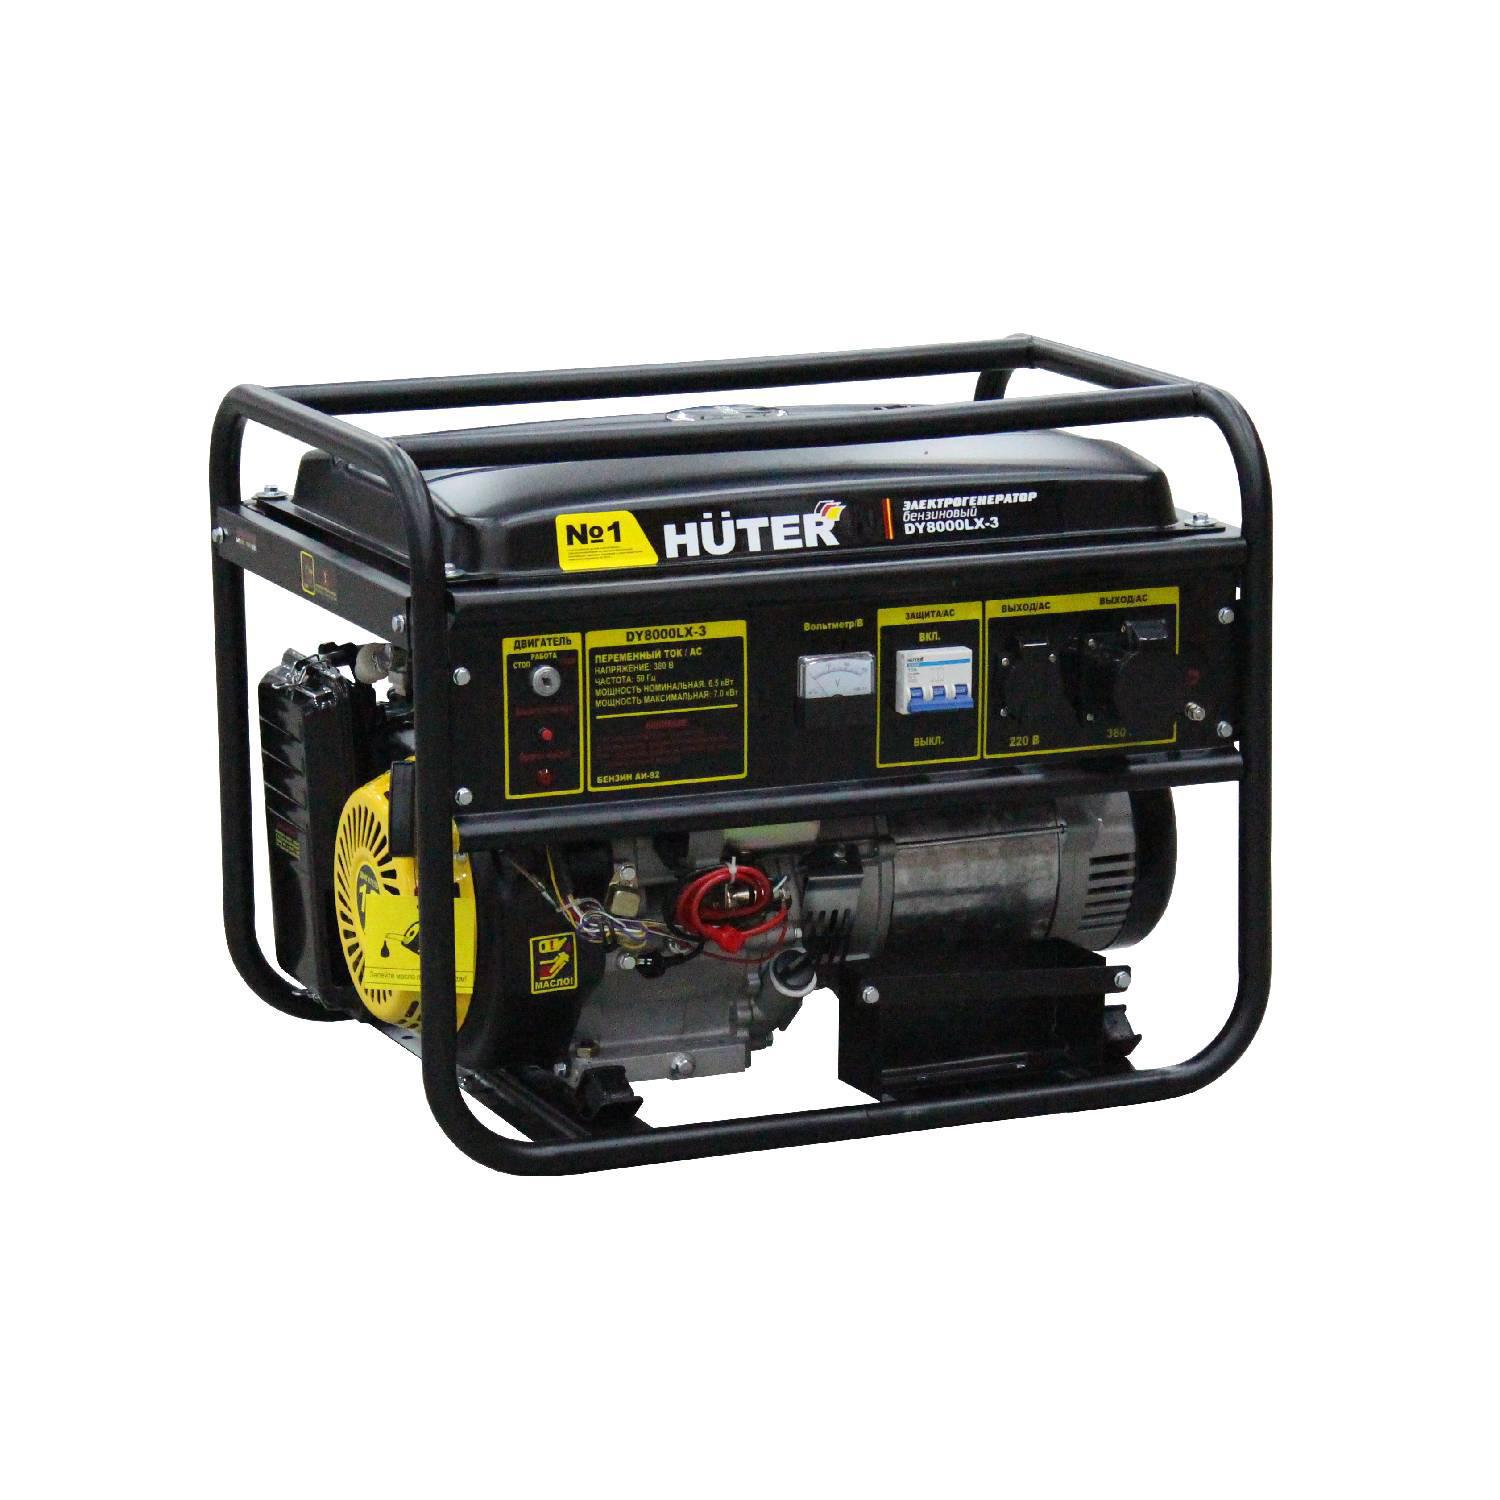  бензиновый Huter DY9500LX 8 кВт по цене 73190 ₽/шт.  в .